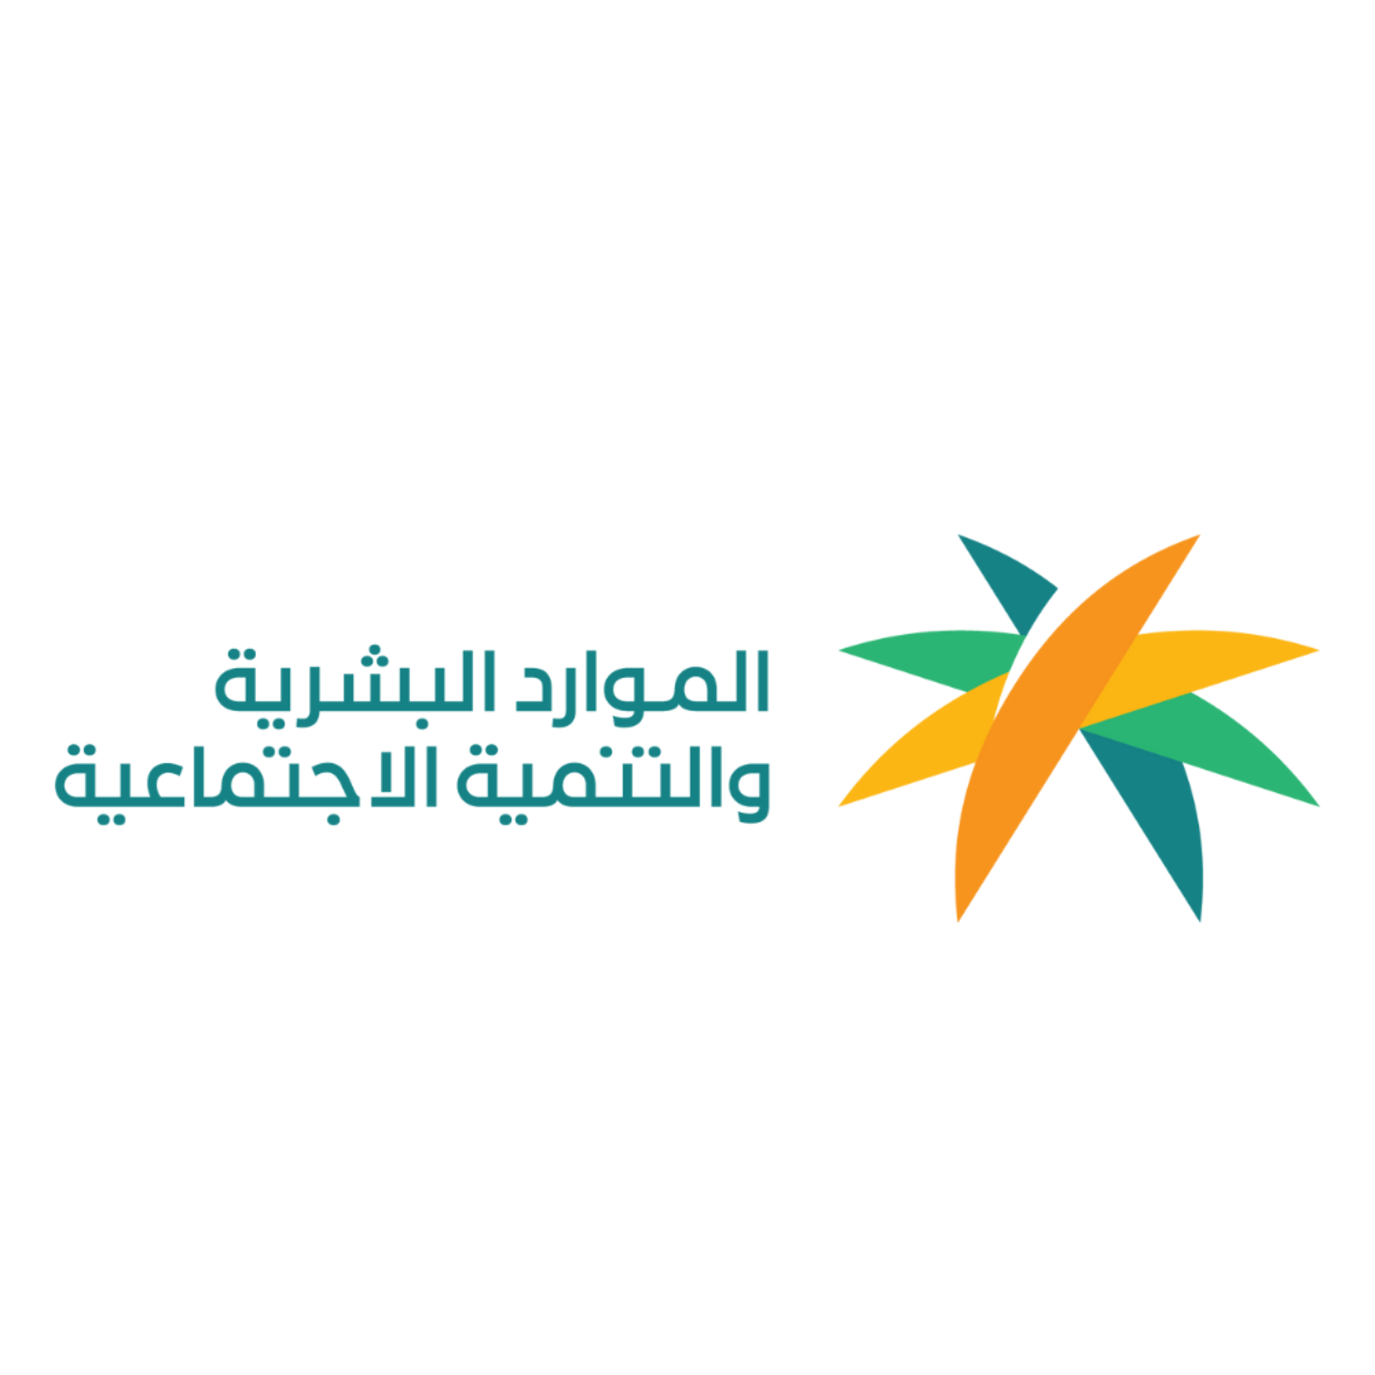 وزارة الموارد البشرية دوام رمضان في السعودية 2022